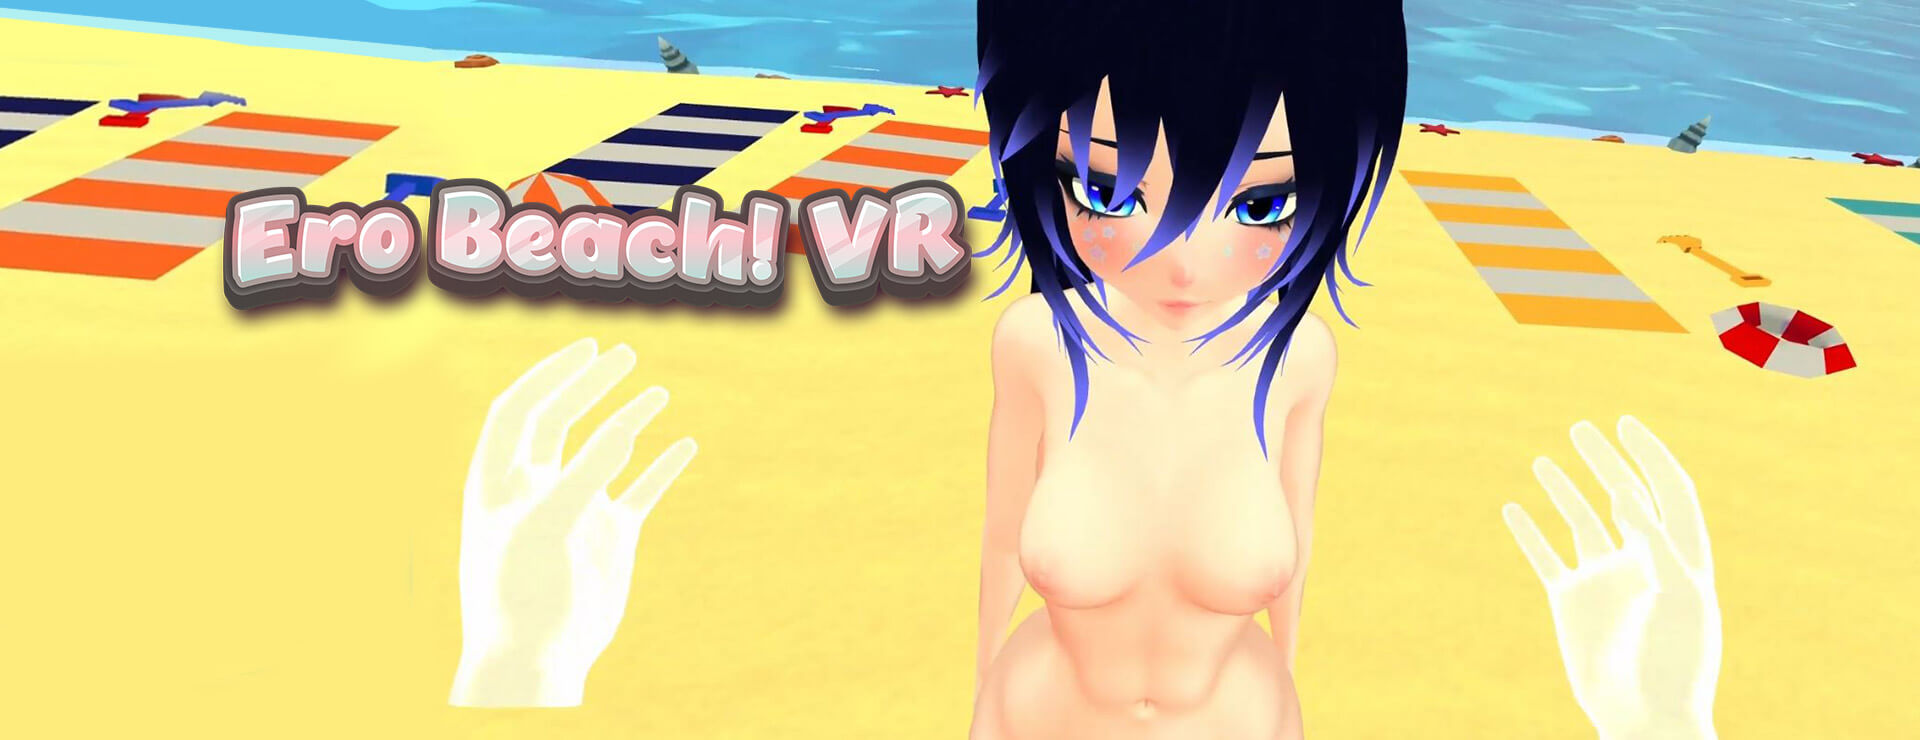 Ero Beach! VR - Simulation Spiel